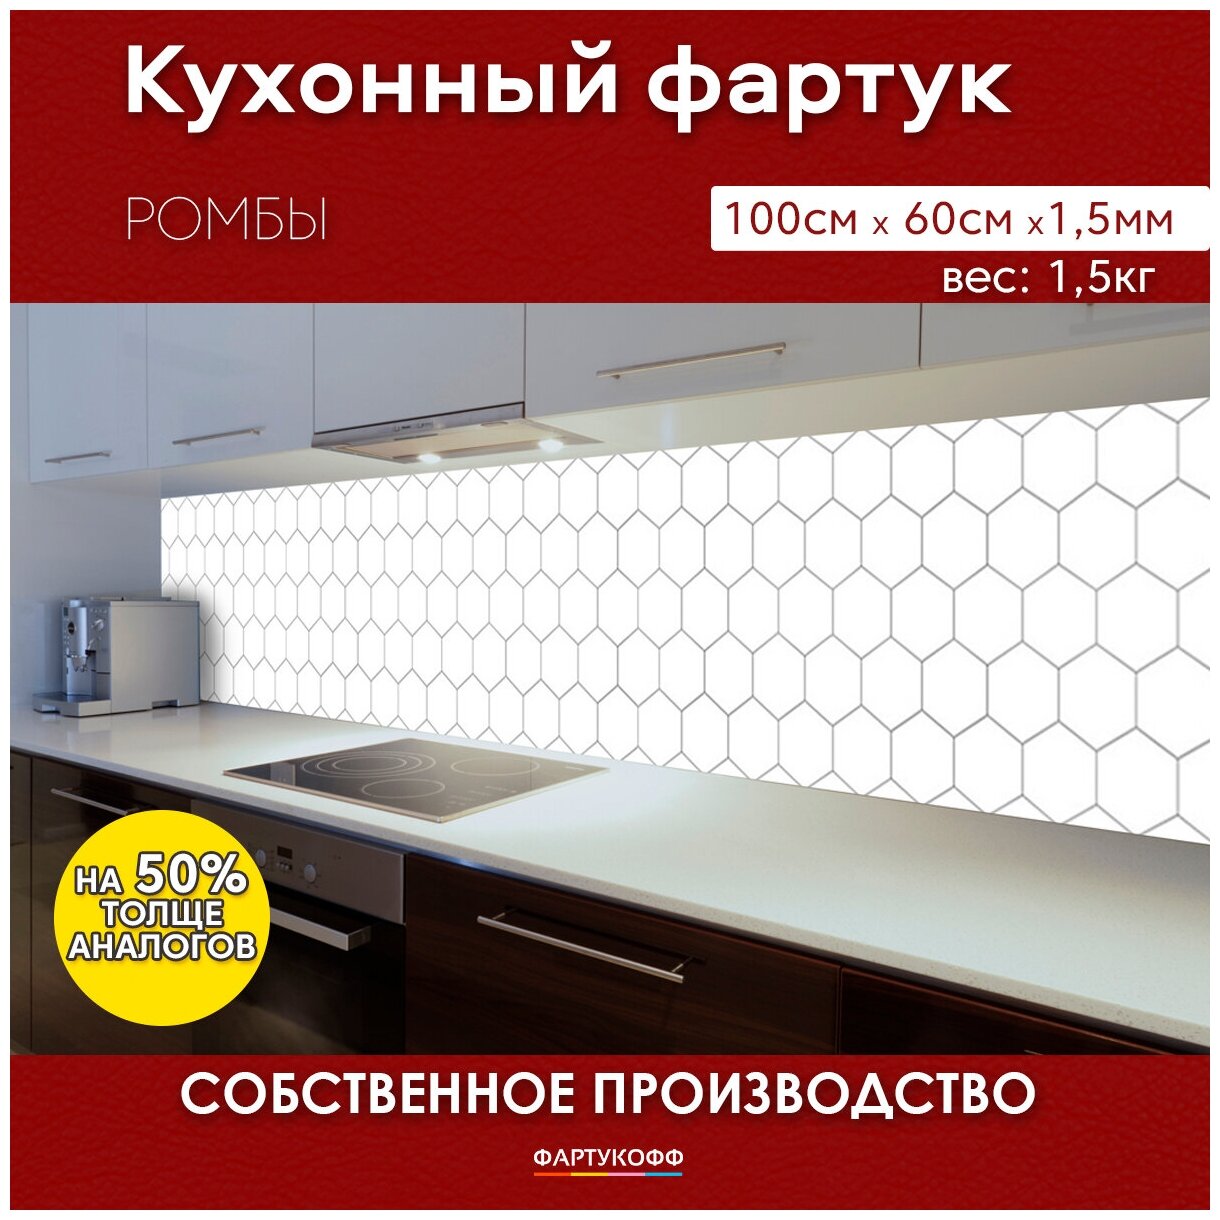 Кухонный фартук с 3D покрытием "Ромбы" 1000*600*1,5 мм, АБС пластик, термоперевод